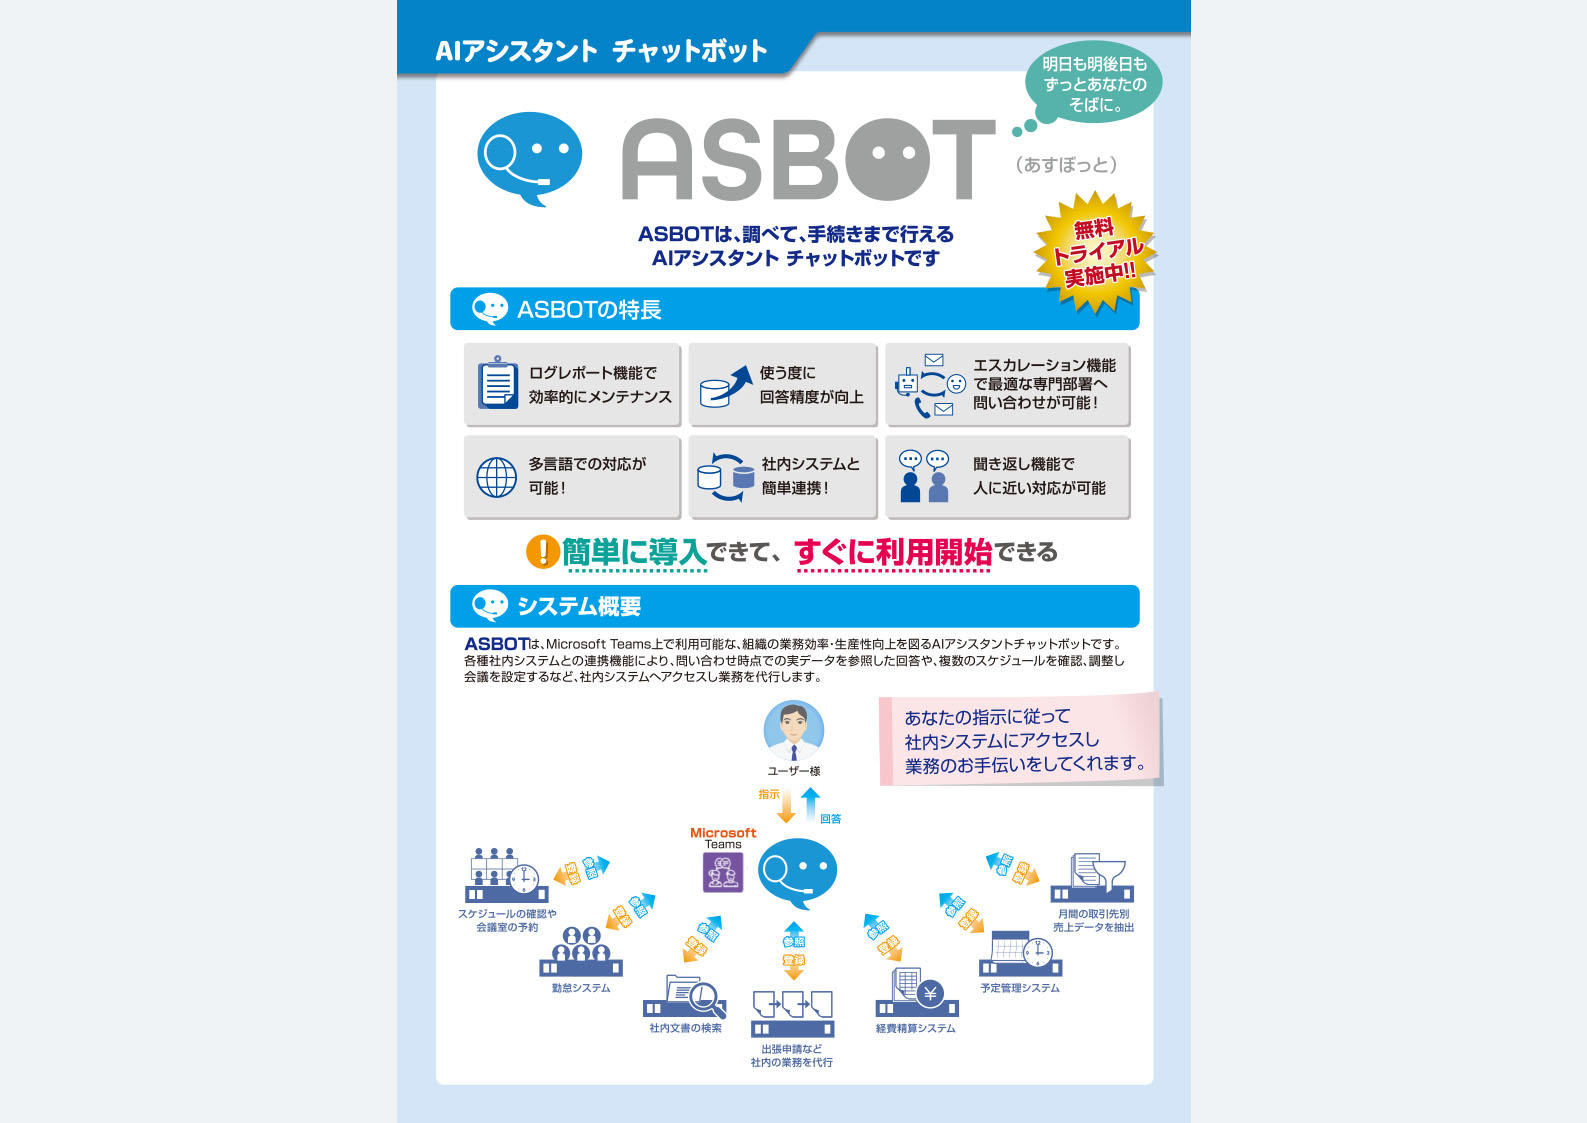  AIアシスタントチャットボットサービス ASBOT